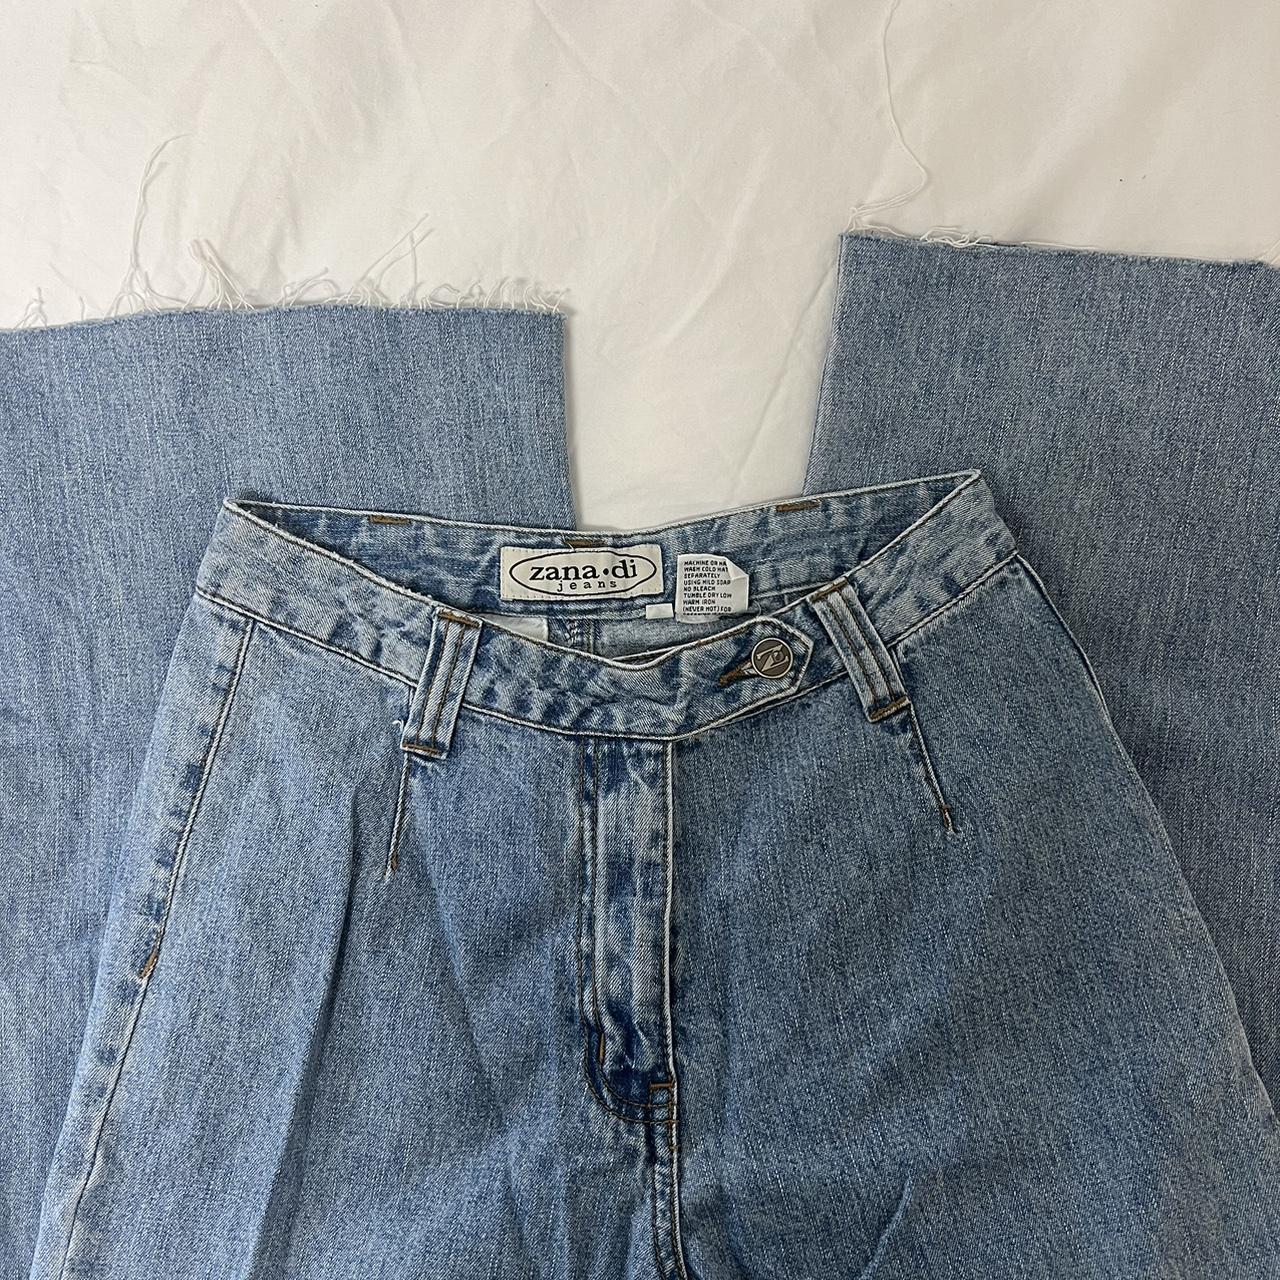 Vintage Zana•di jeans ★Flattering v-cut waist ★Raw... - Depop